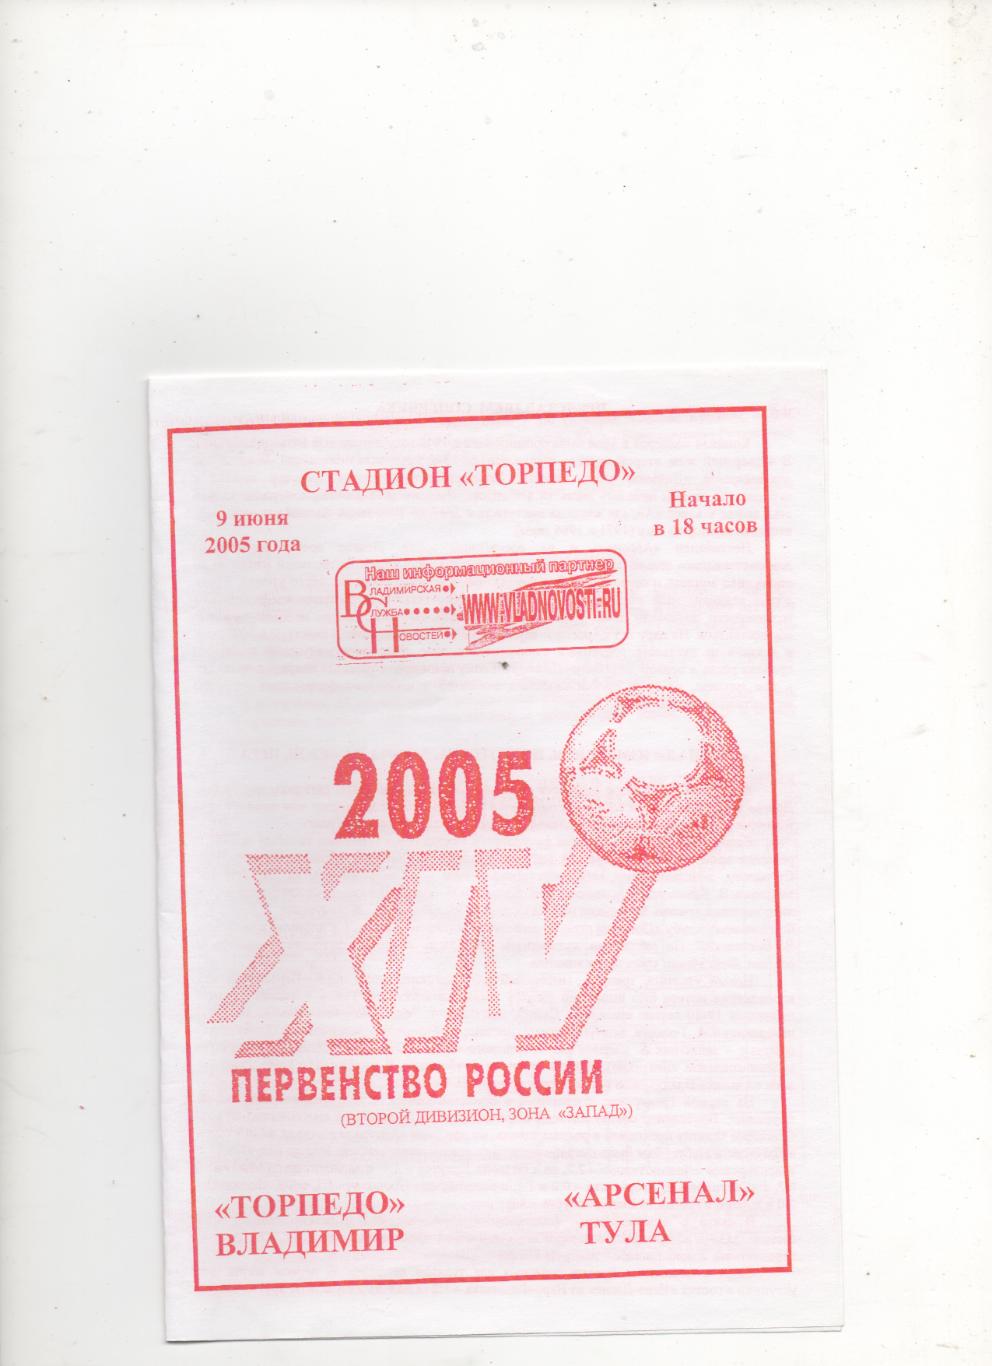 Торпедо (Владимир) - Арсенал (Тула) - 2005.